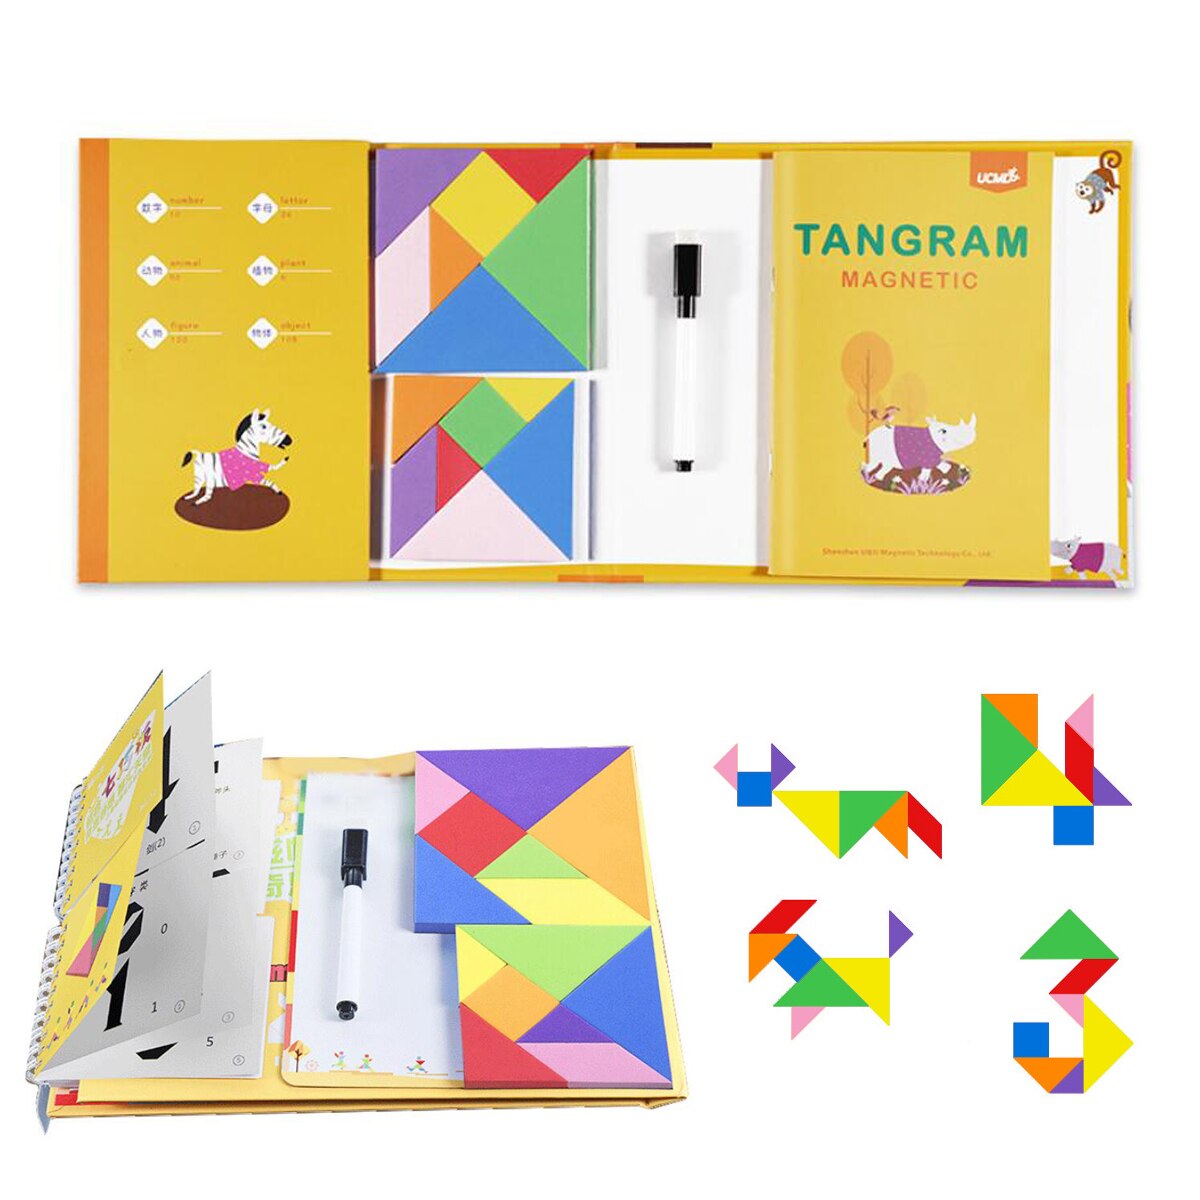 Magentisk mønster rejse tangram puslespil hvidt bræt til tegning af stilkspil puslespil hjernevridere legetøj til børn til voksne: 2 tangram version